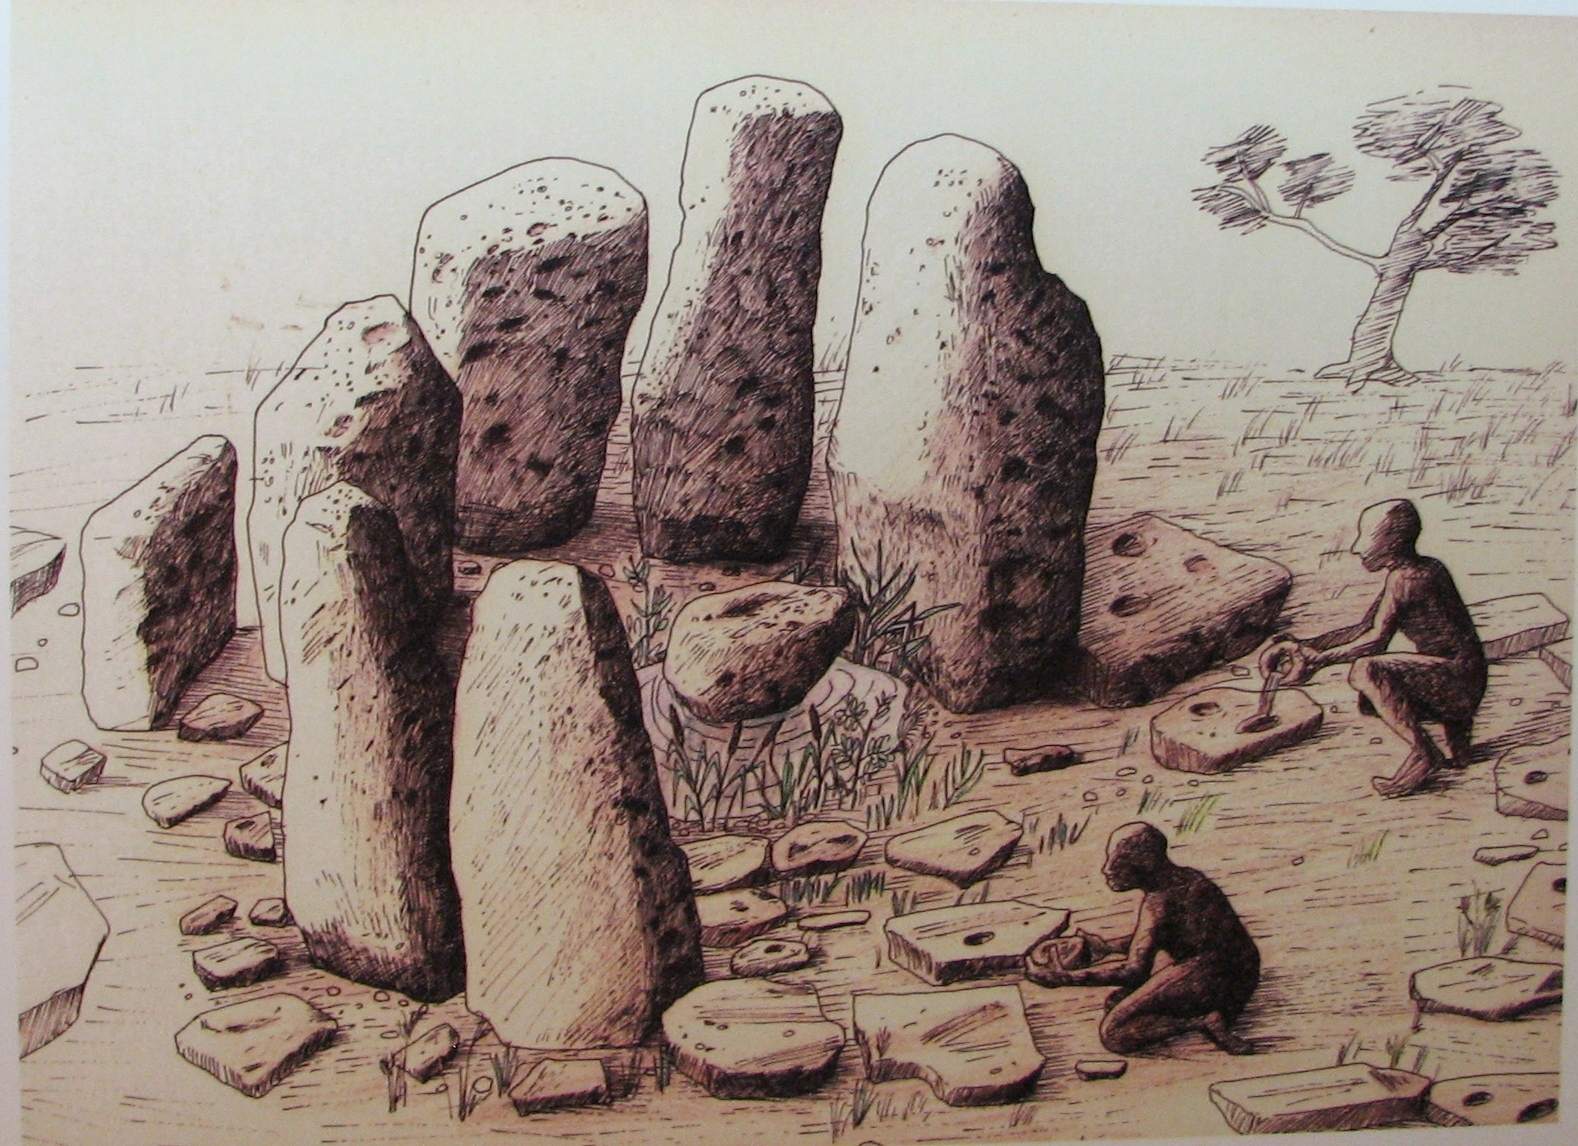 Atlit-Yam: En nedsänkt neolitisk bosättning 3